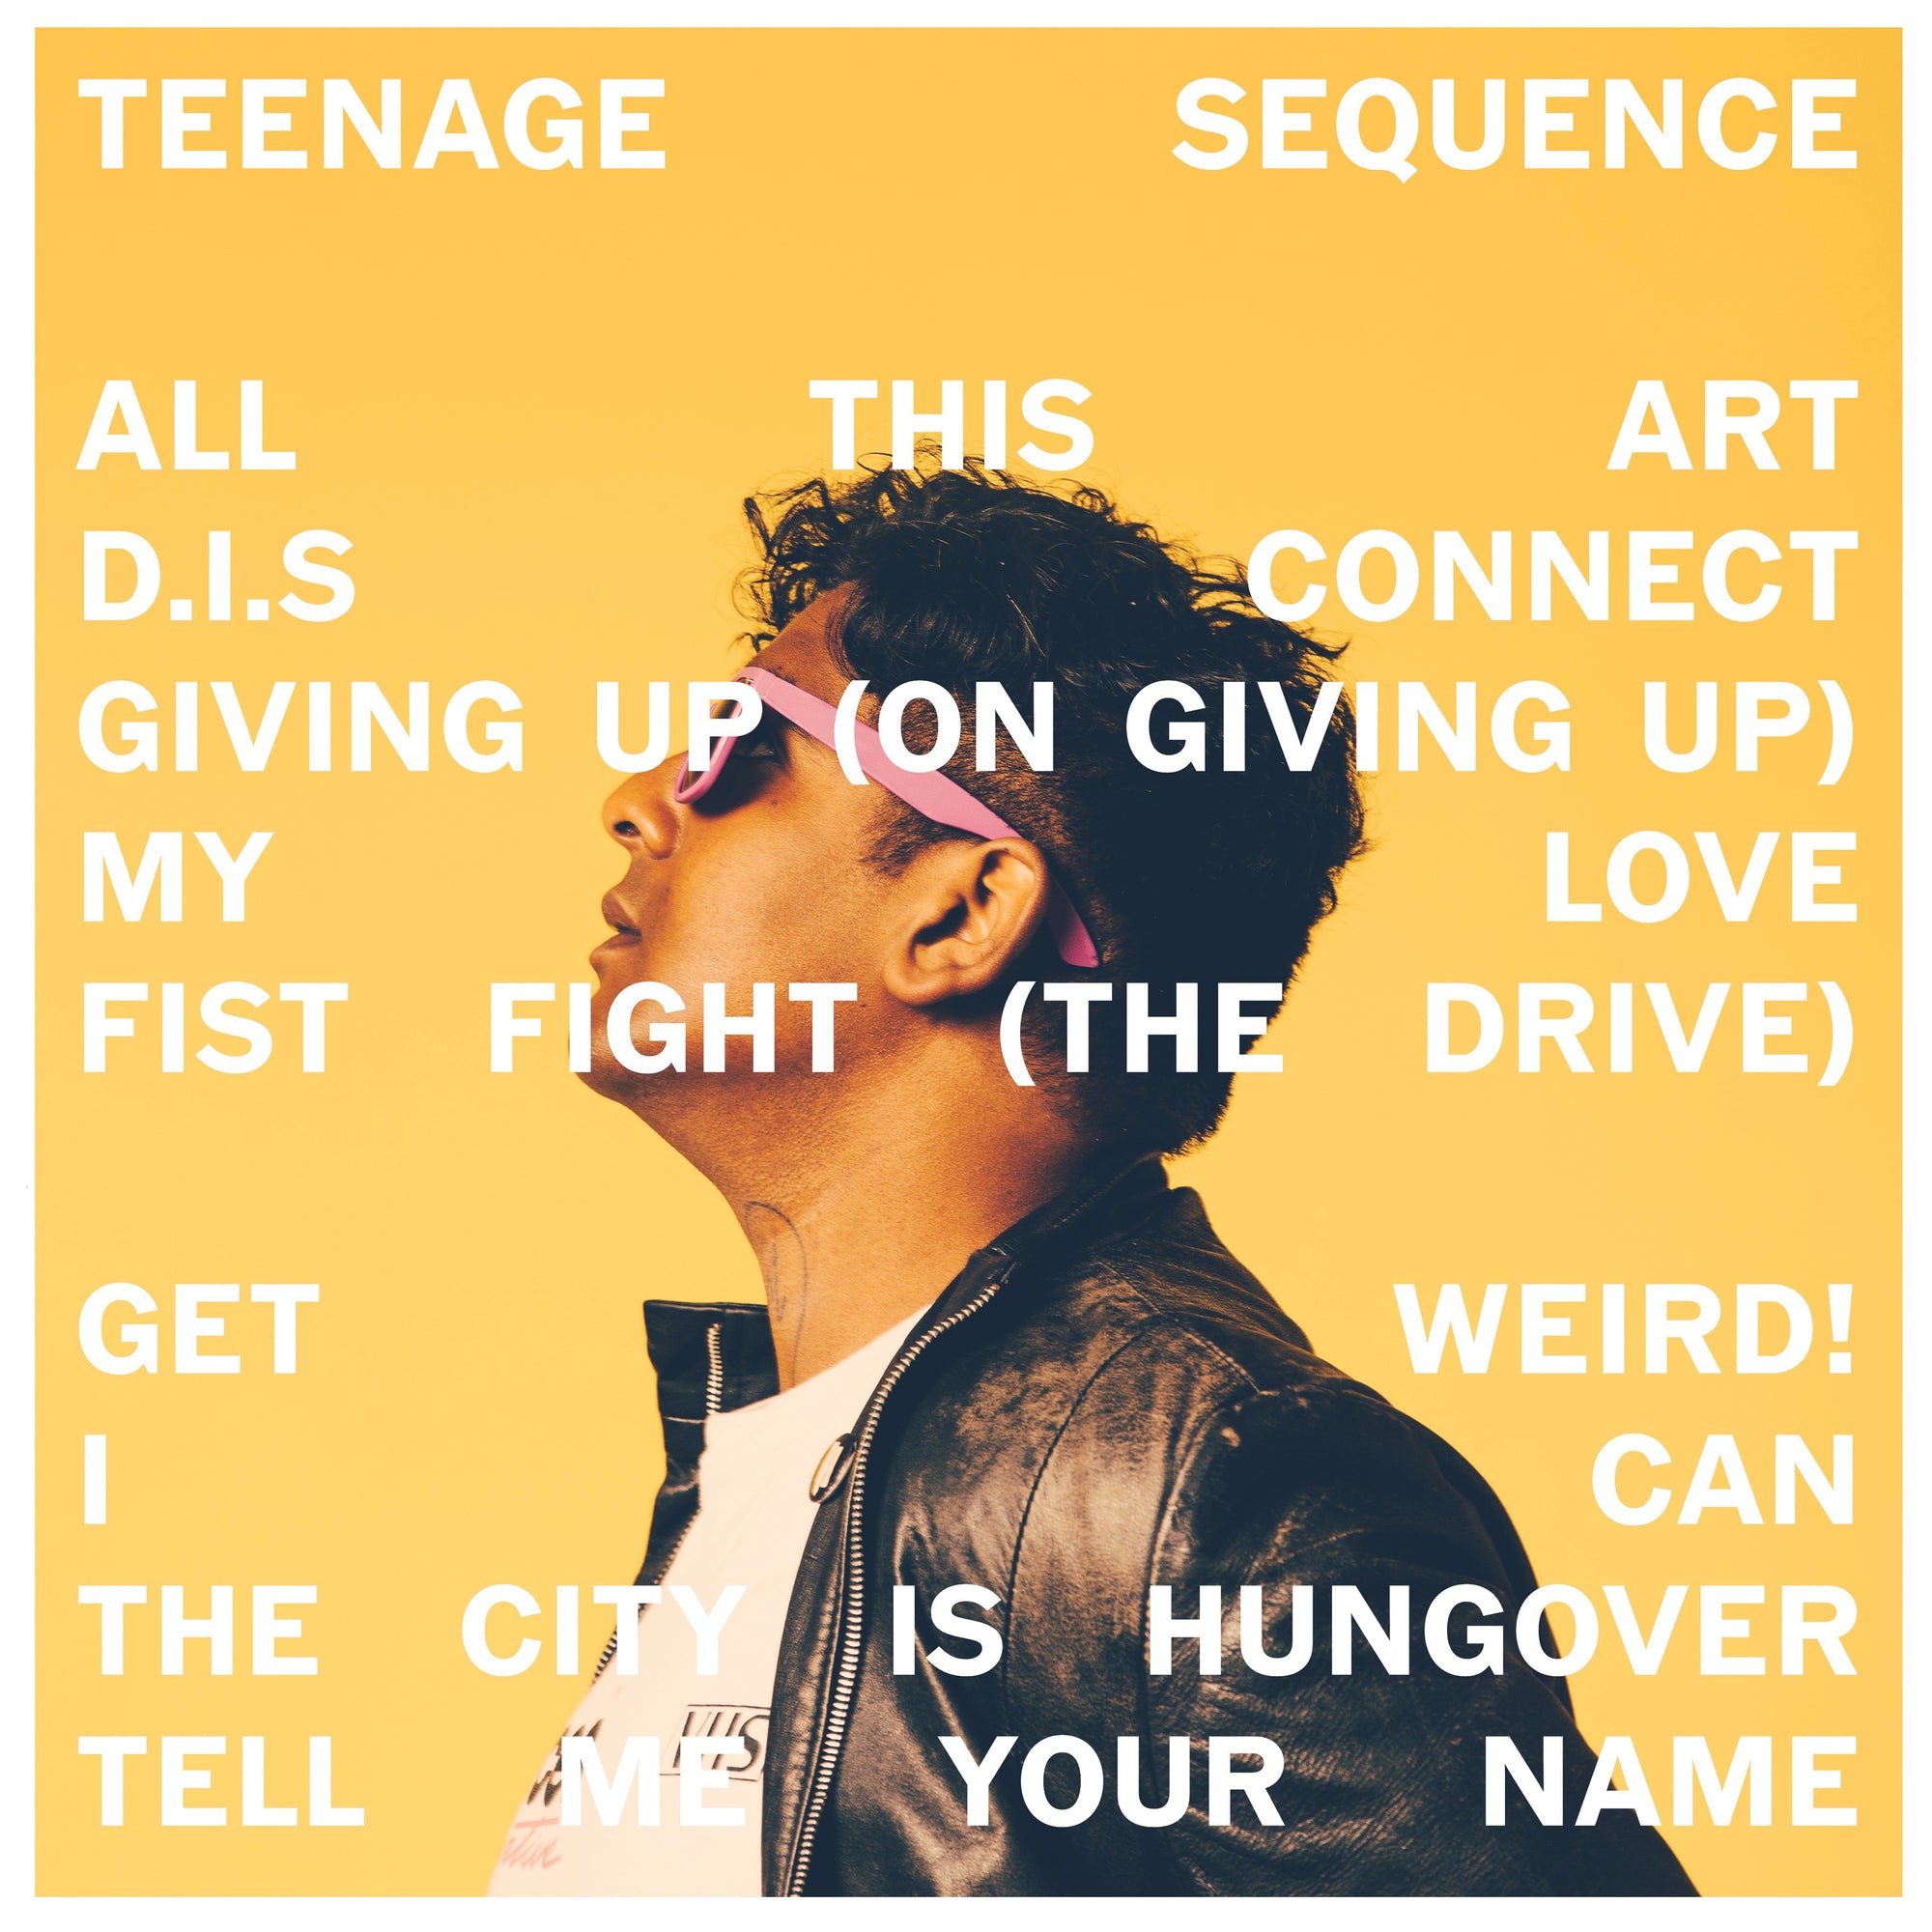 Teenage Sequence "Teenage Sequence"